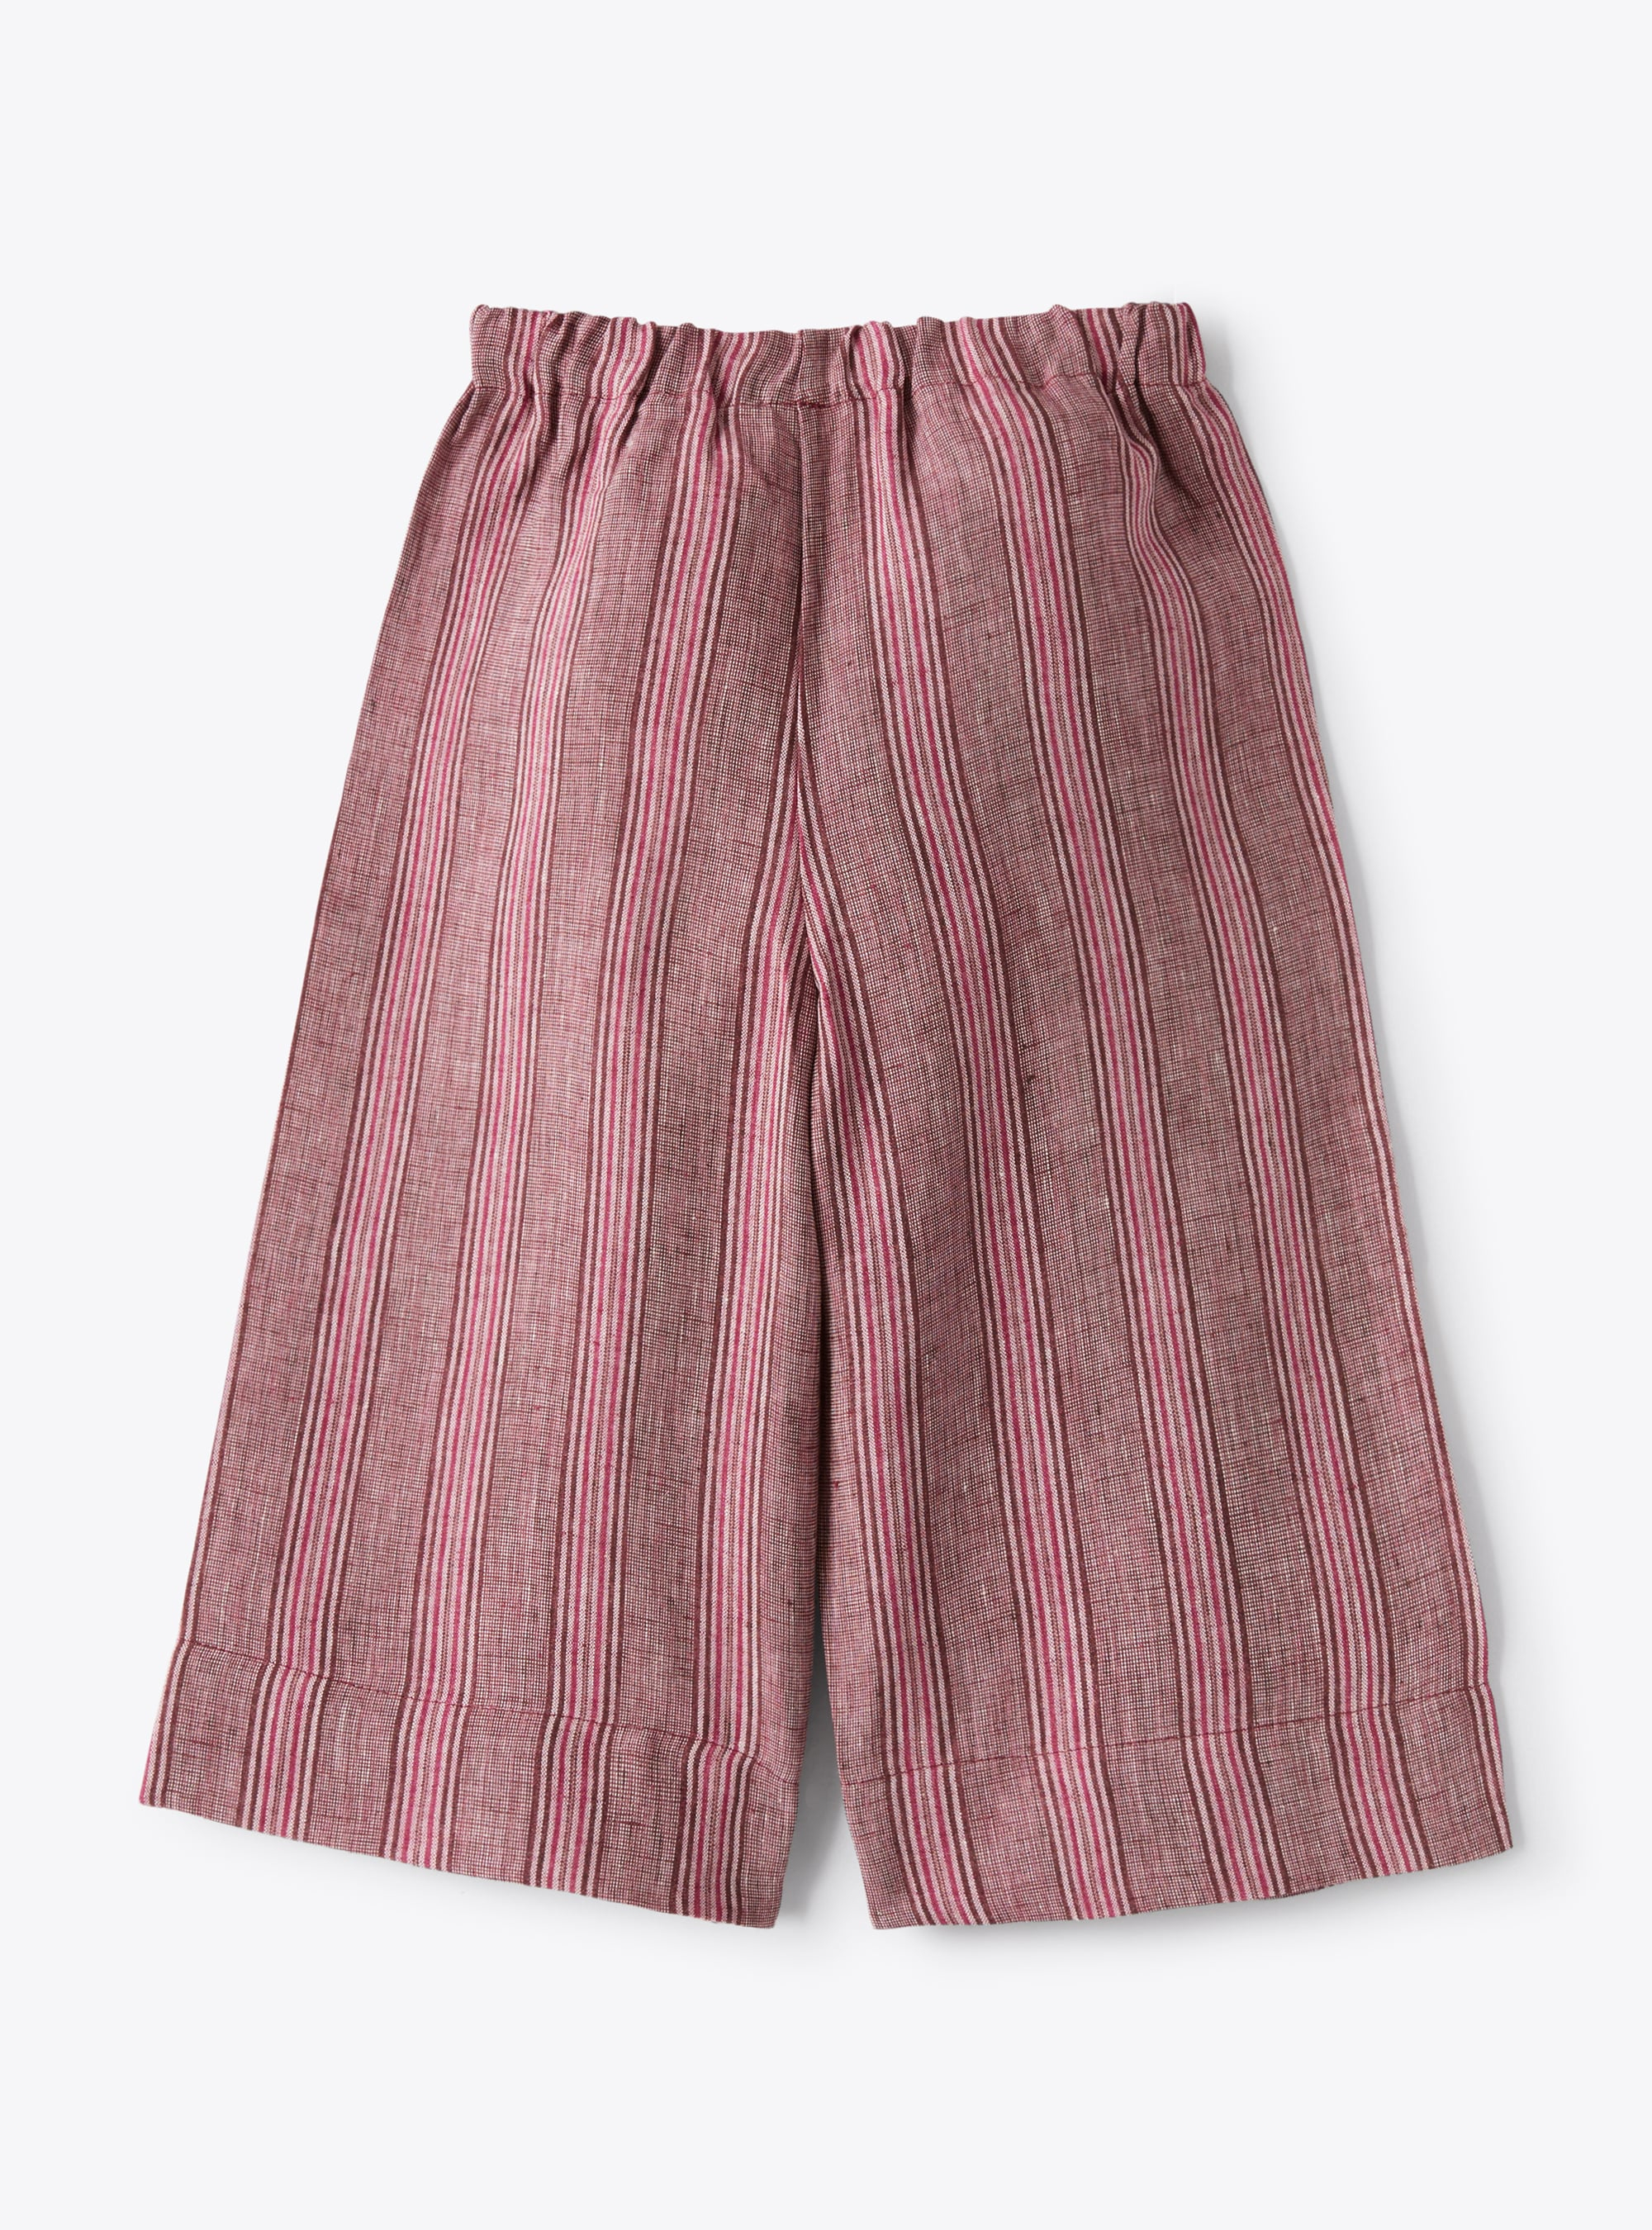 Pantalon capri en lin chiné à rayures violet oignon rouge | Il Gufo